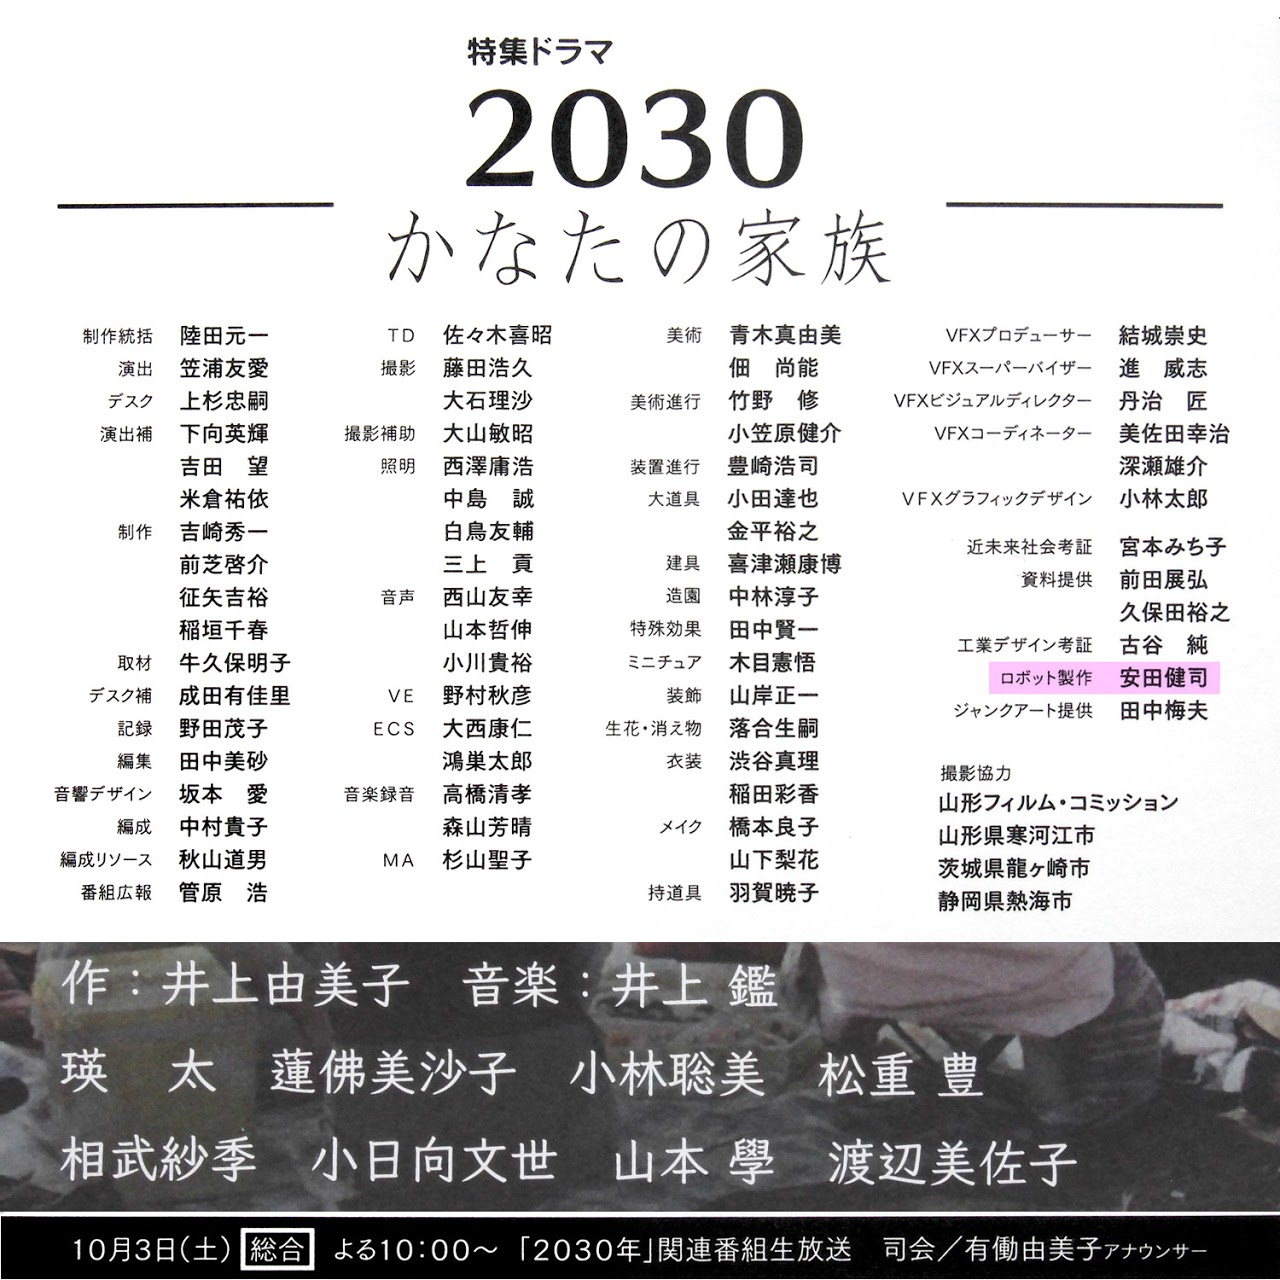 NHKドラマ「2030かなたの家族」, ロボット制作, 制作スタッフ一覧